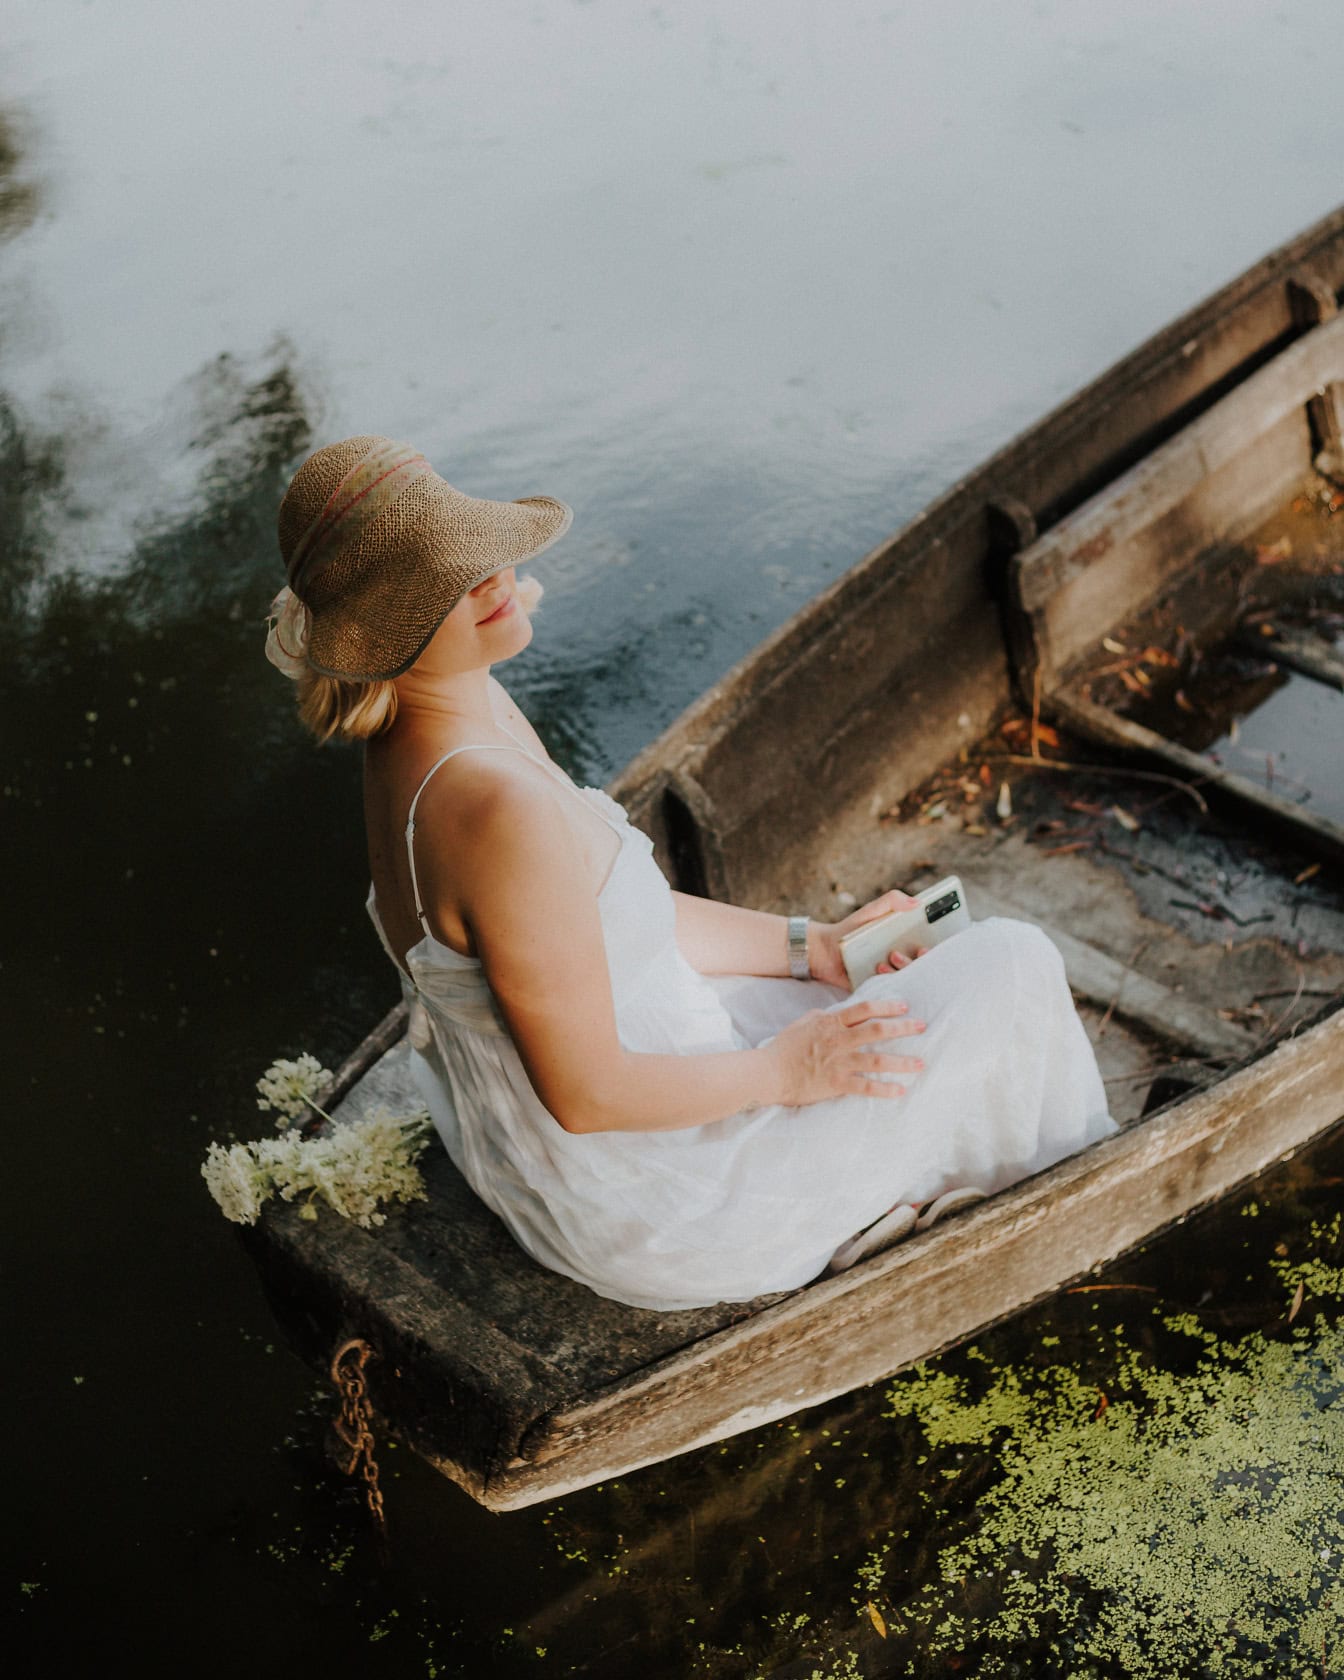 Žena v bielych šatách a slamenom klobúku sedí v starej drevenej lodi